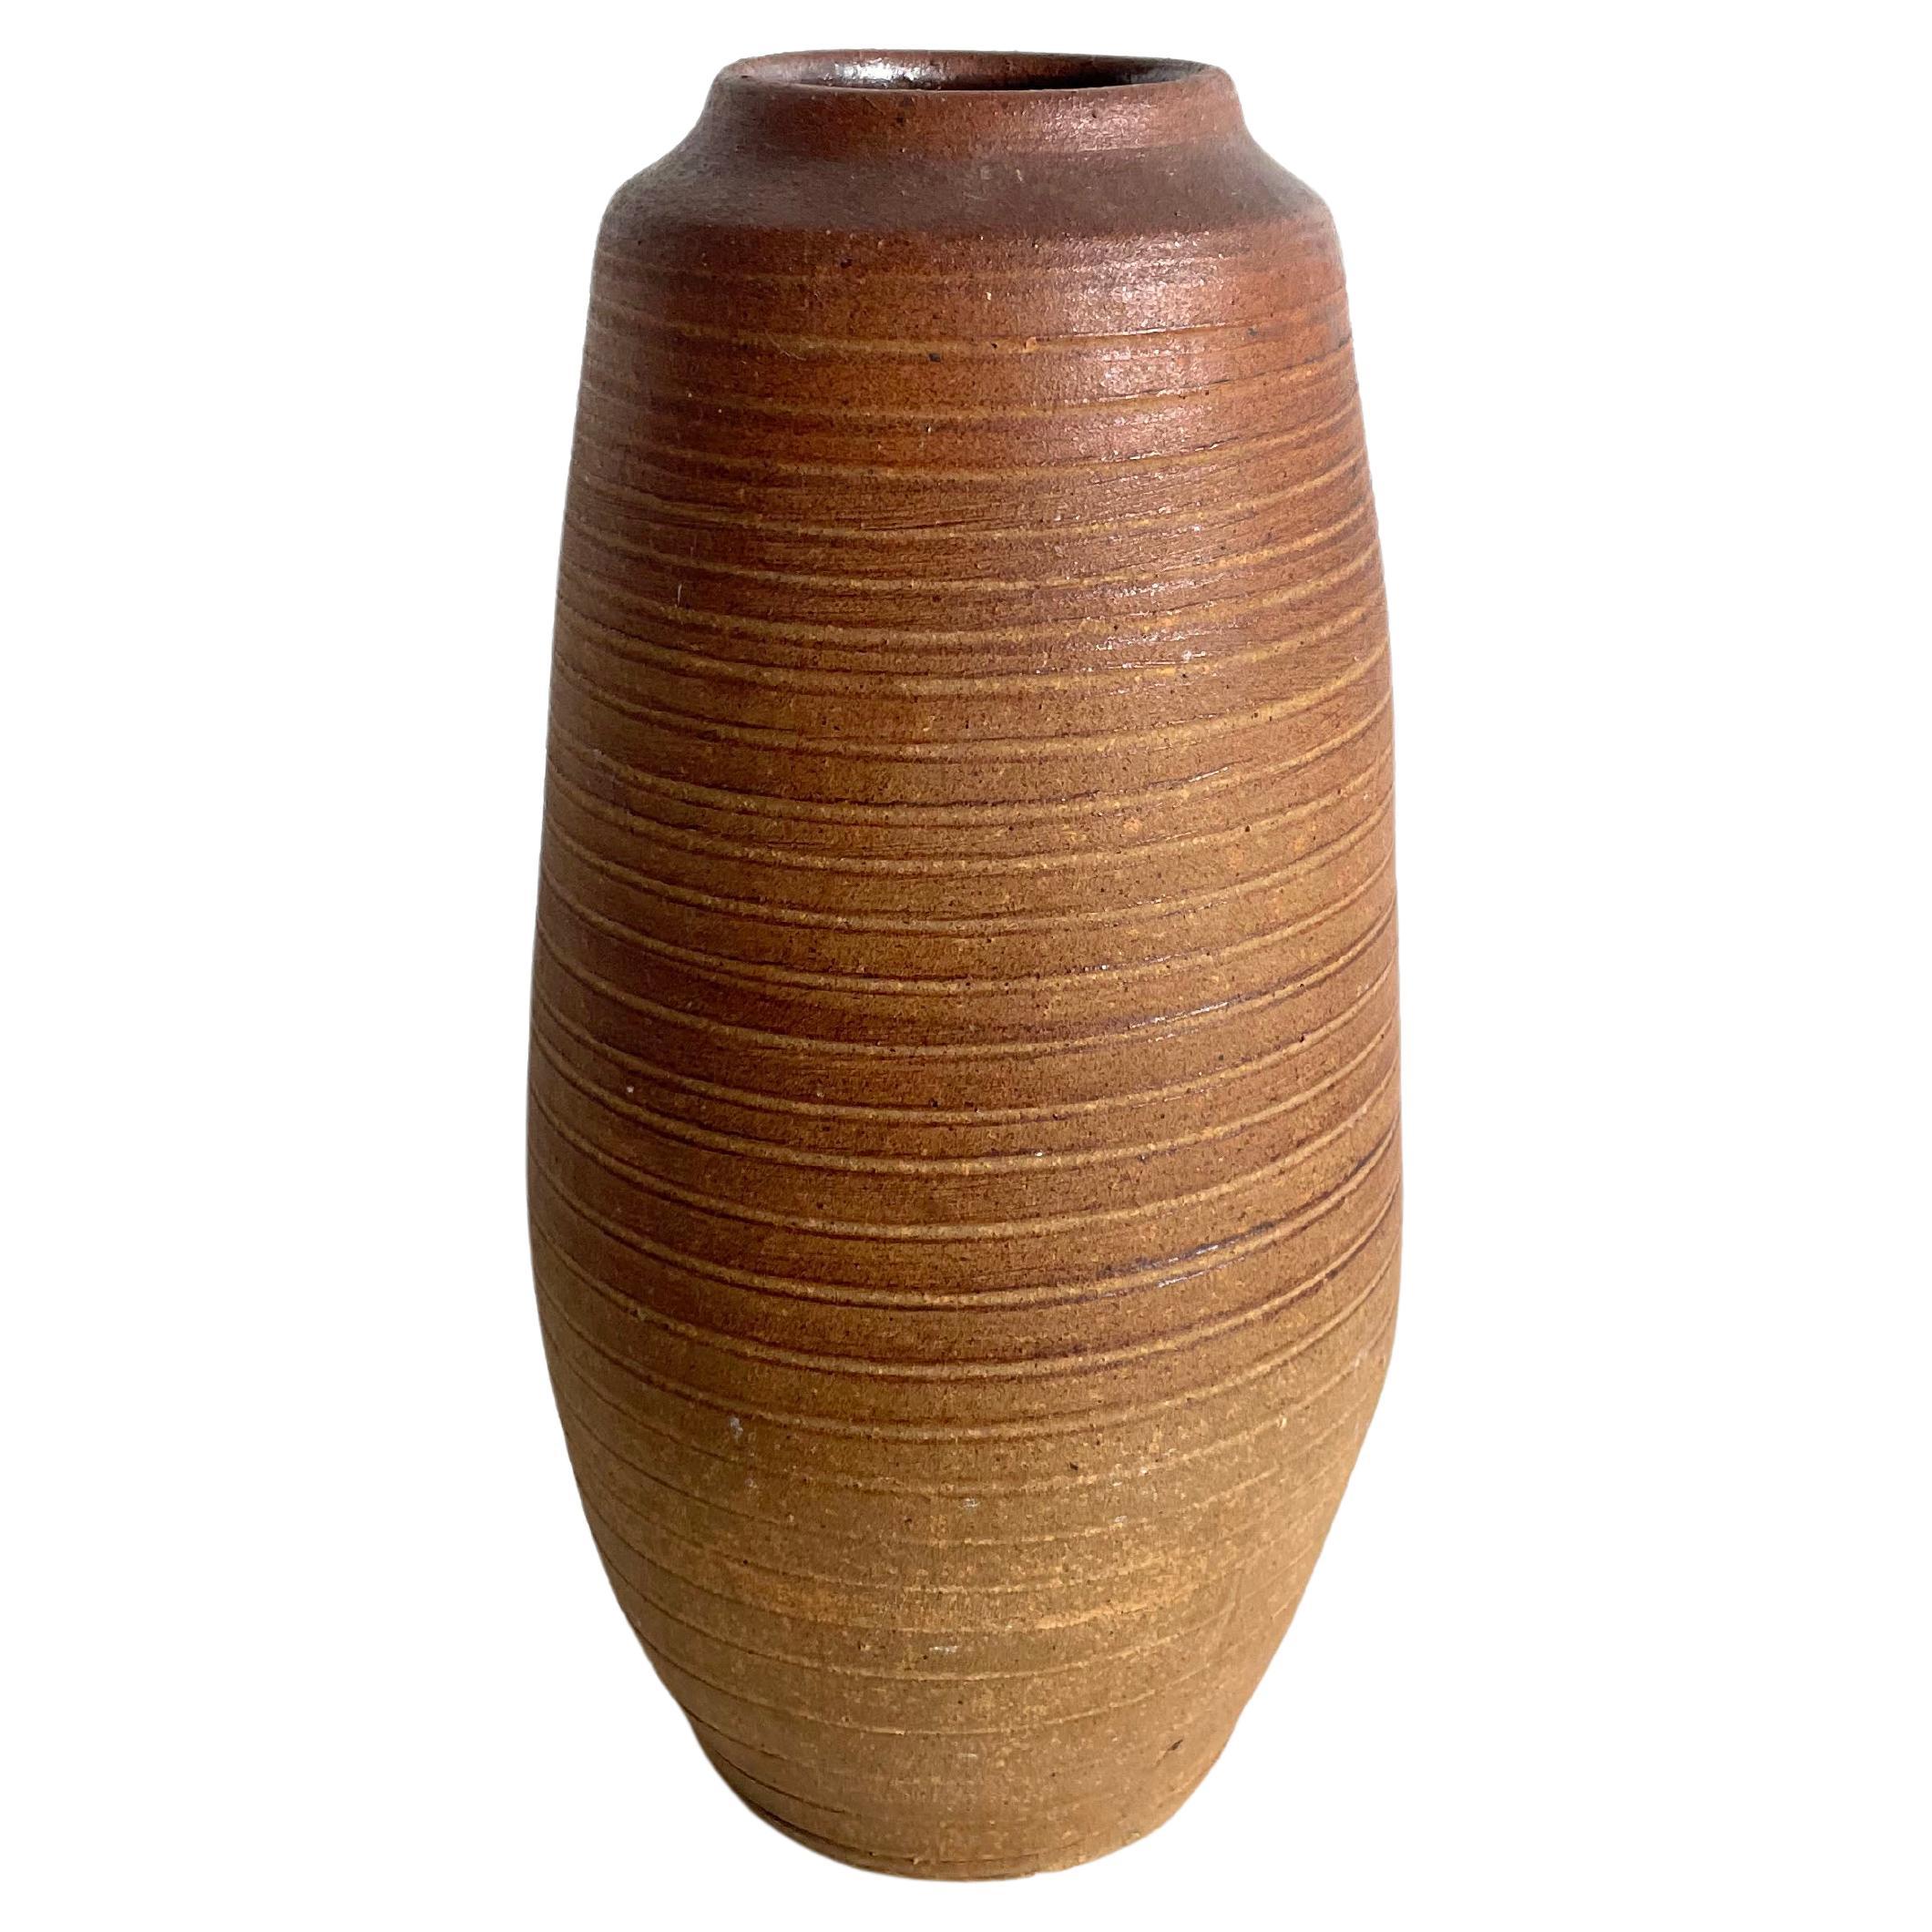 Vase vintage en terre cuite avec surface texturée, Wabi Sabi, Studio Pottery, Marked